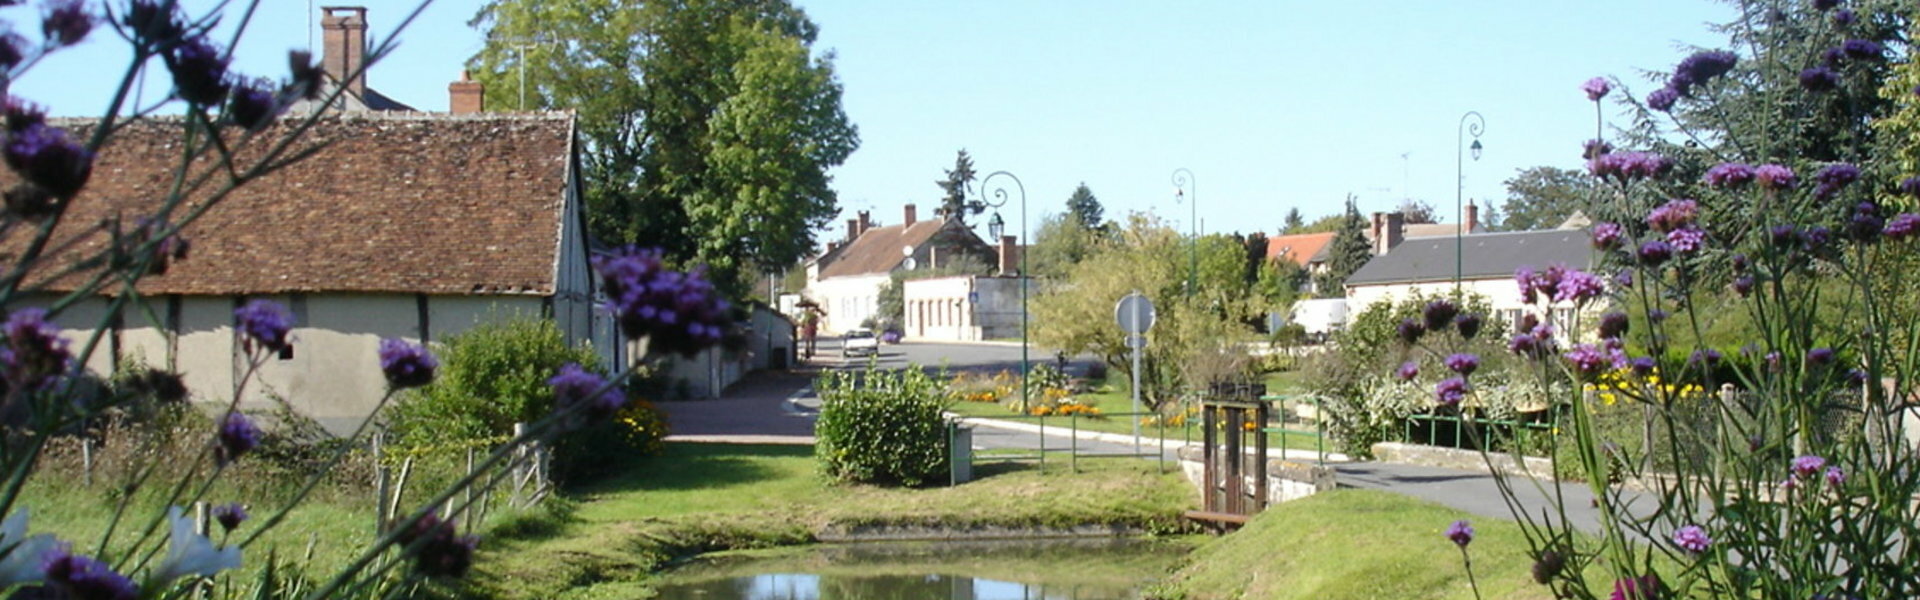 Communauté Communes Canaux Forêts Gâtinais Loiret